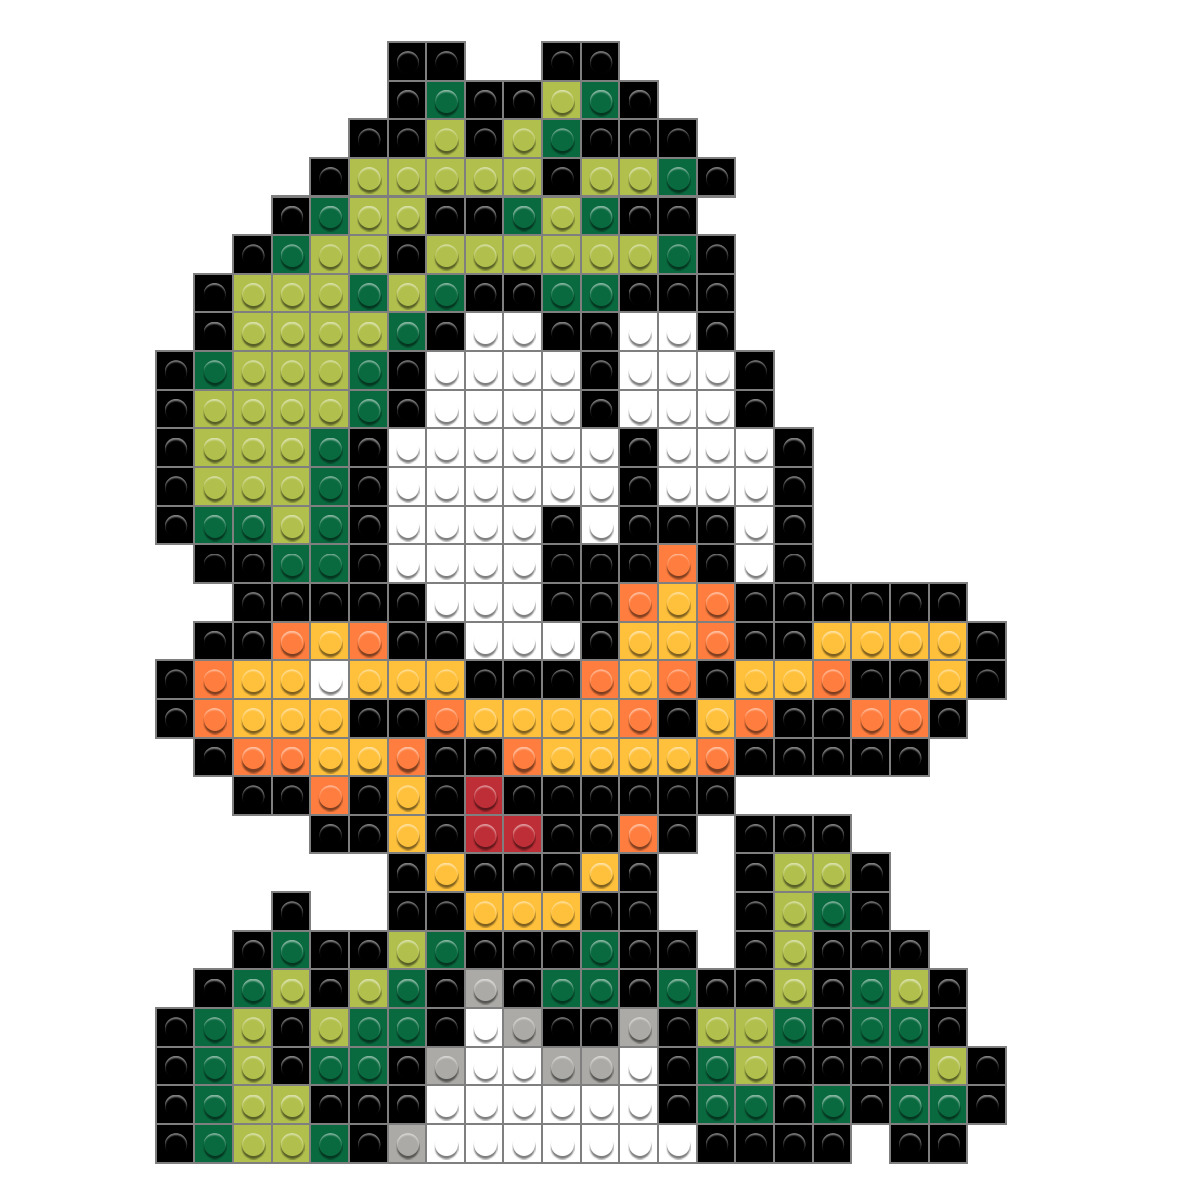 Pixel Duck